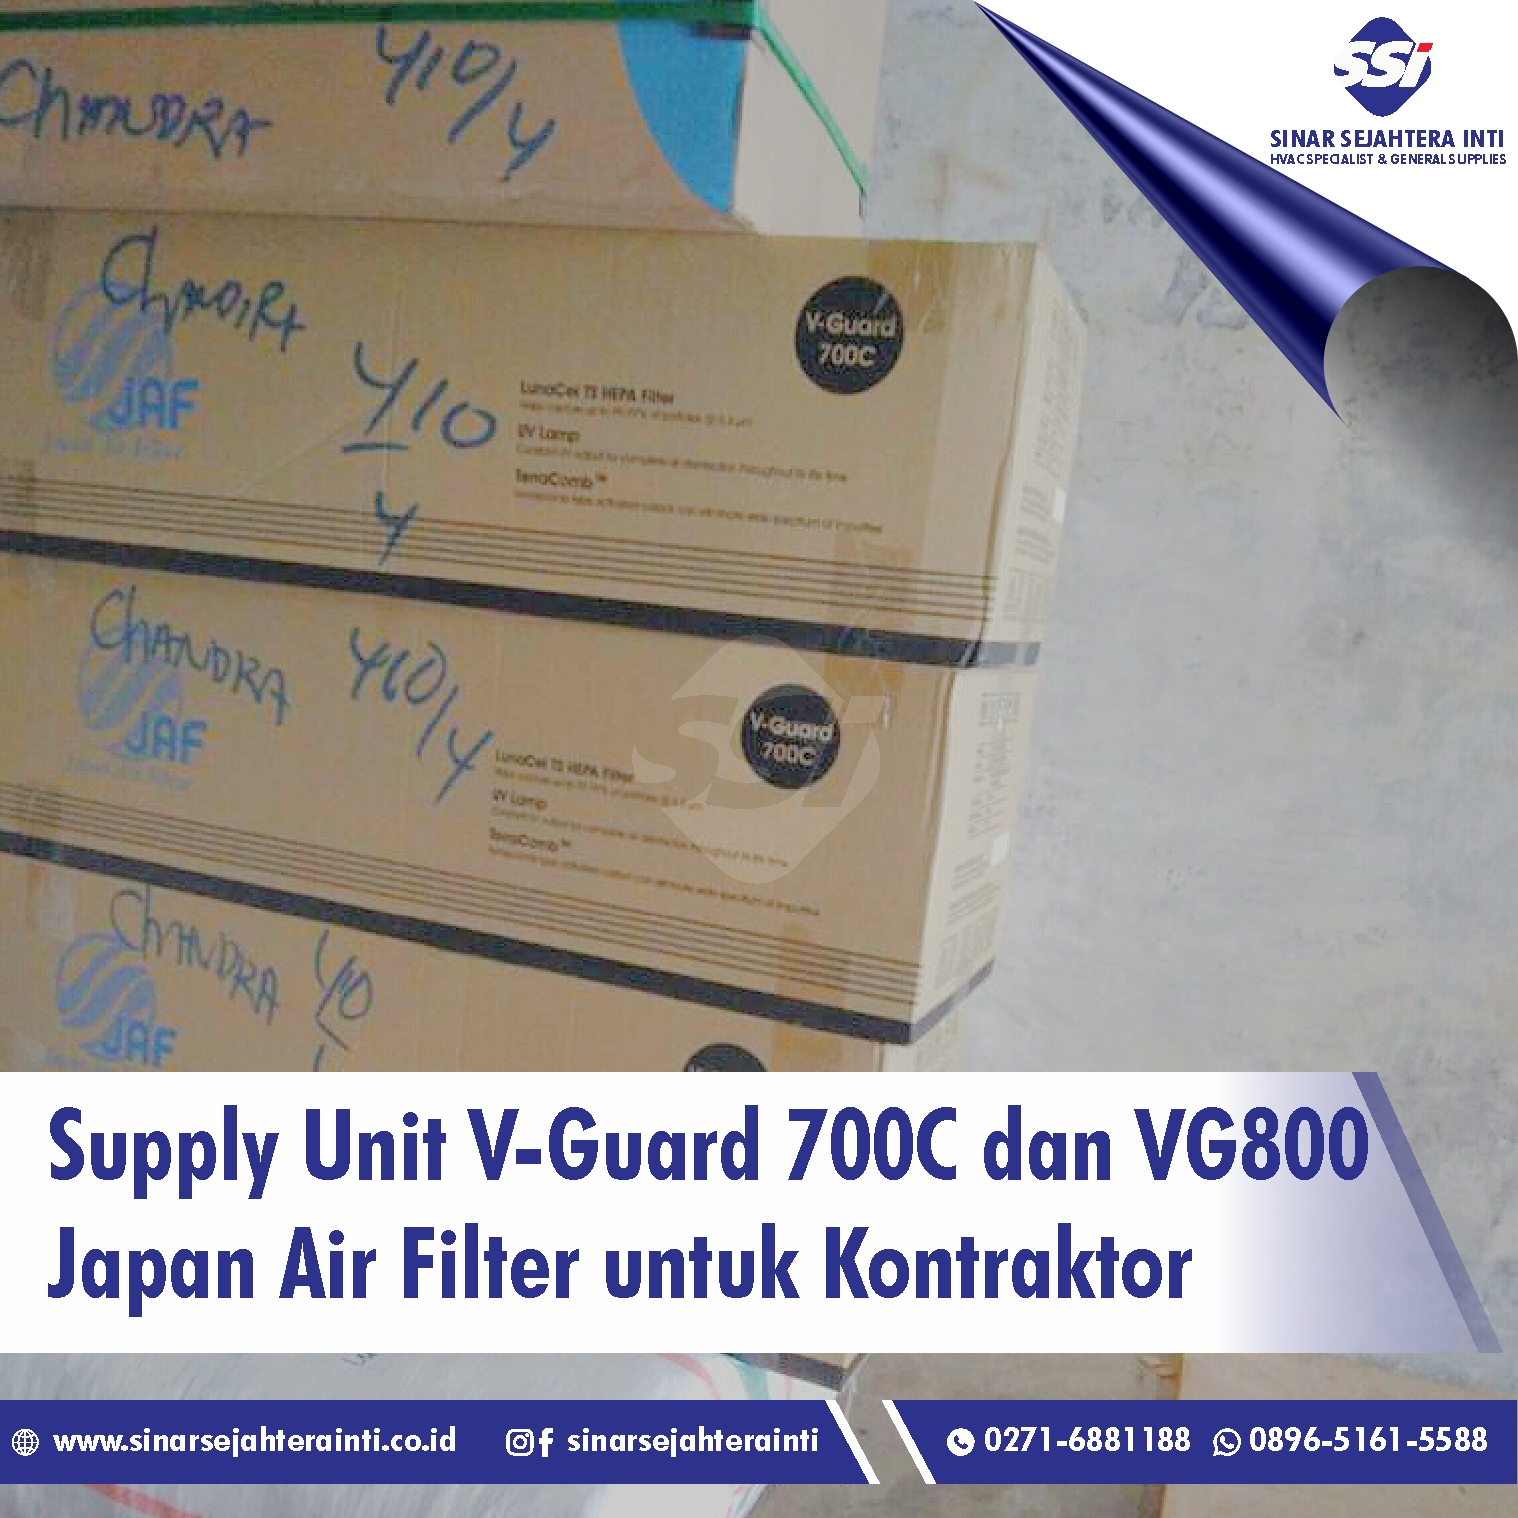 Supply Unit V-Guard 700C dan VG800 Japan Air Filter untuk Kontraktor